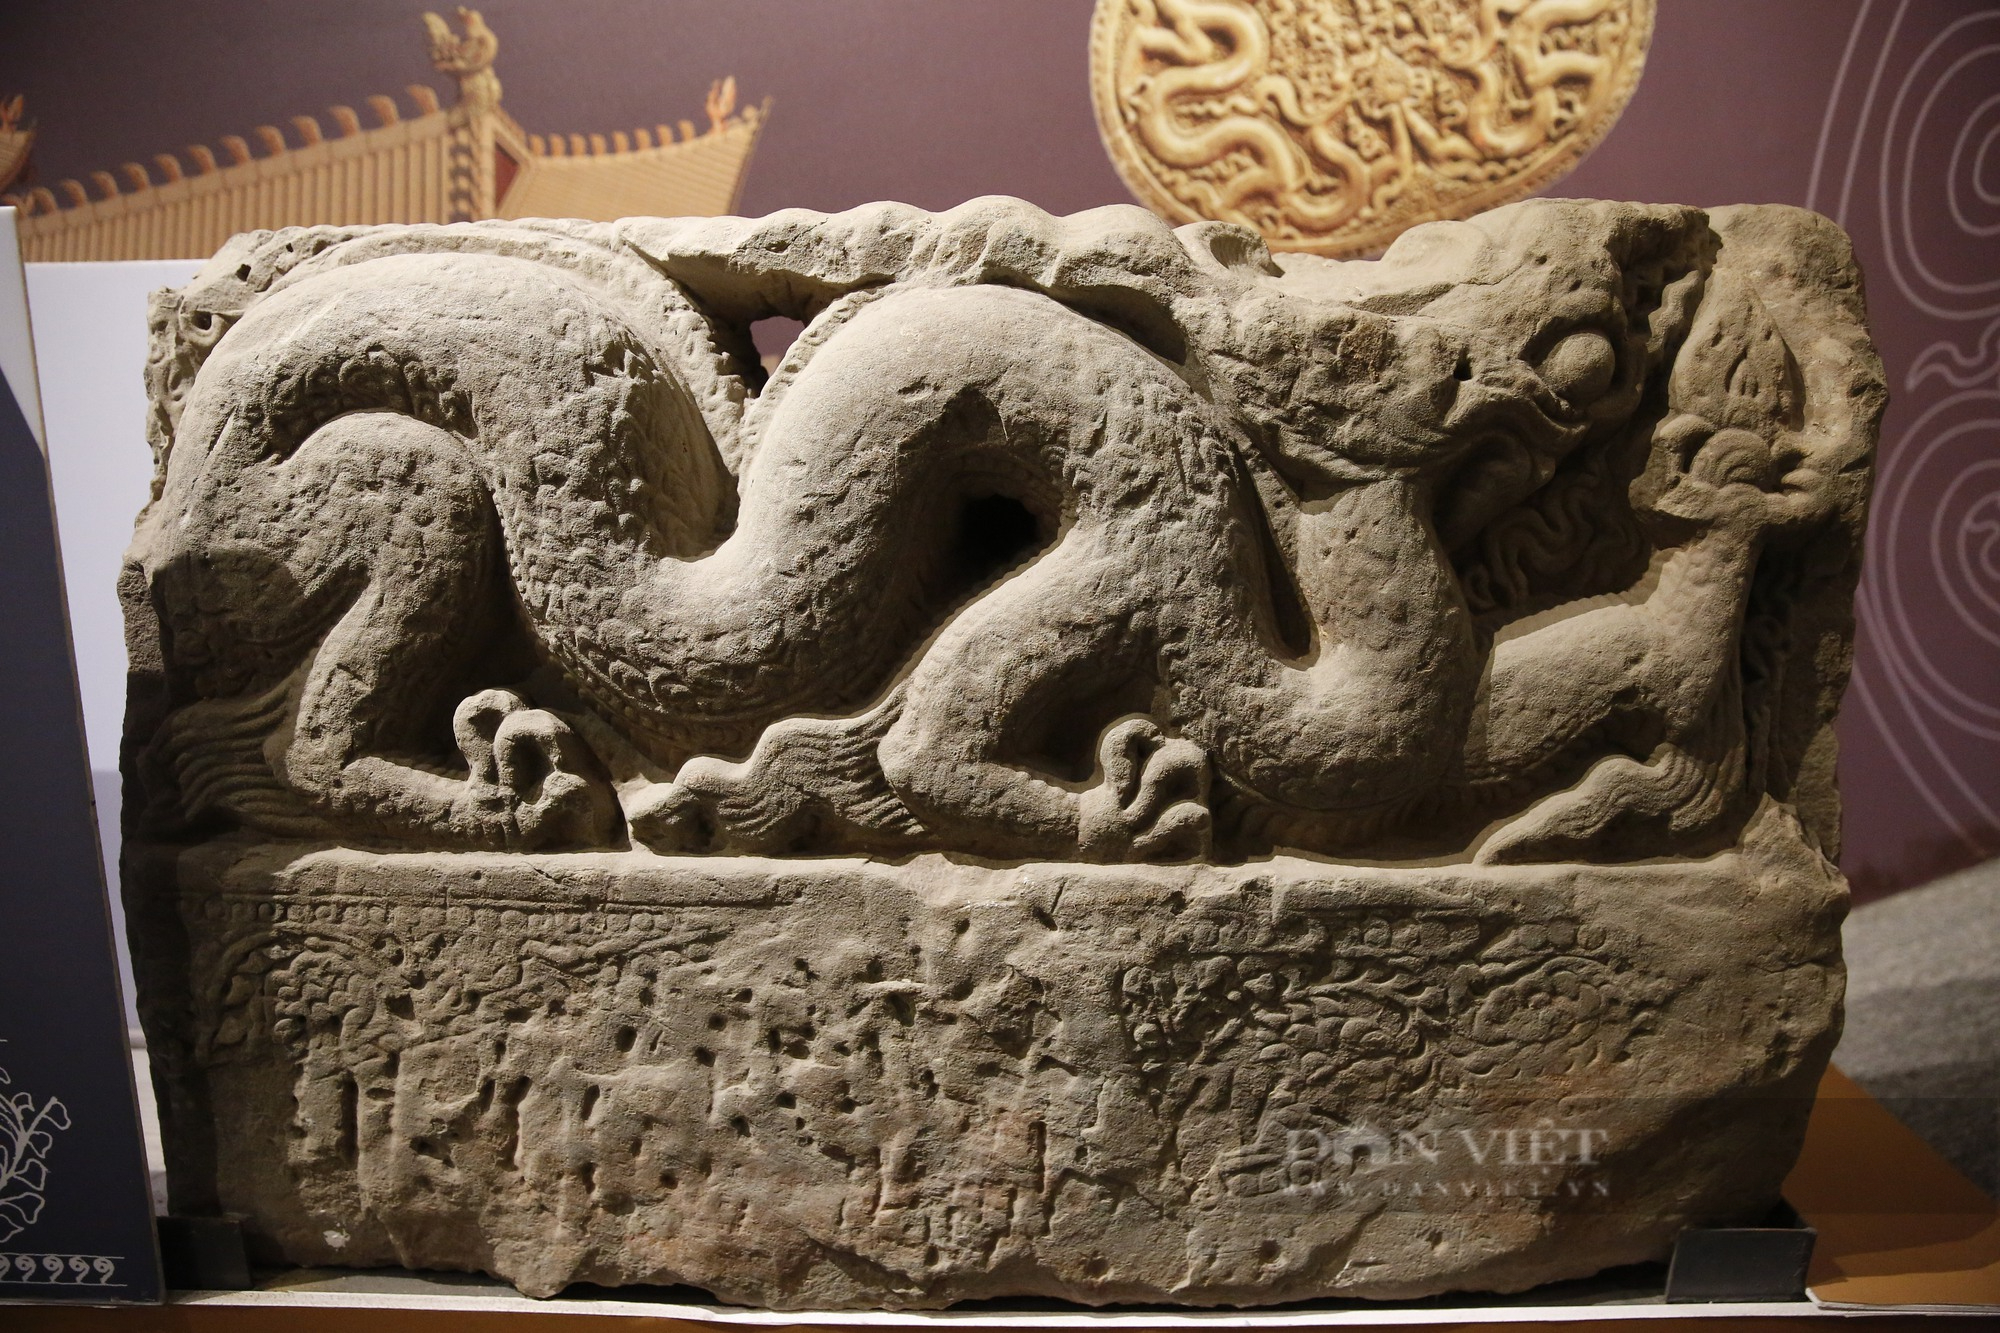 Chiêm ngưỡng nét uy quyền của rồng qua các vương triều Đại Việt - Ảnh 3.